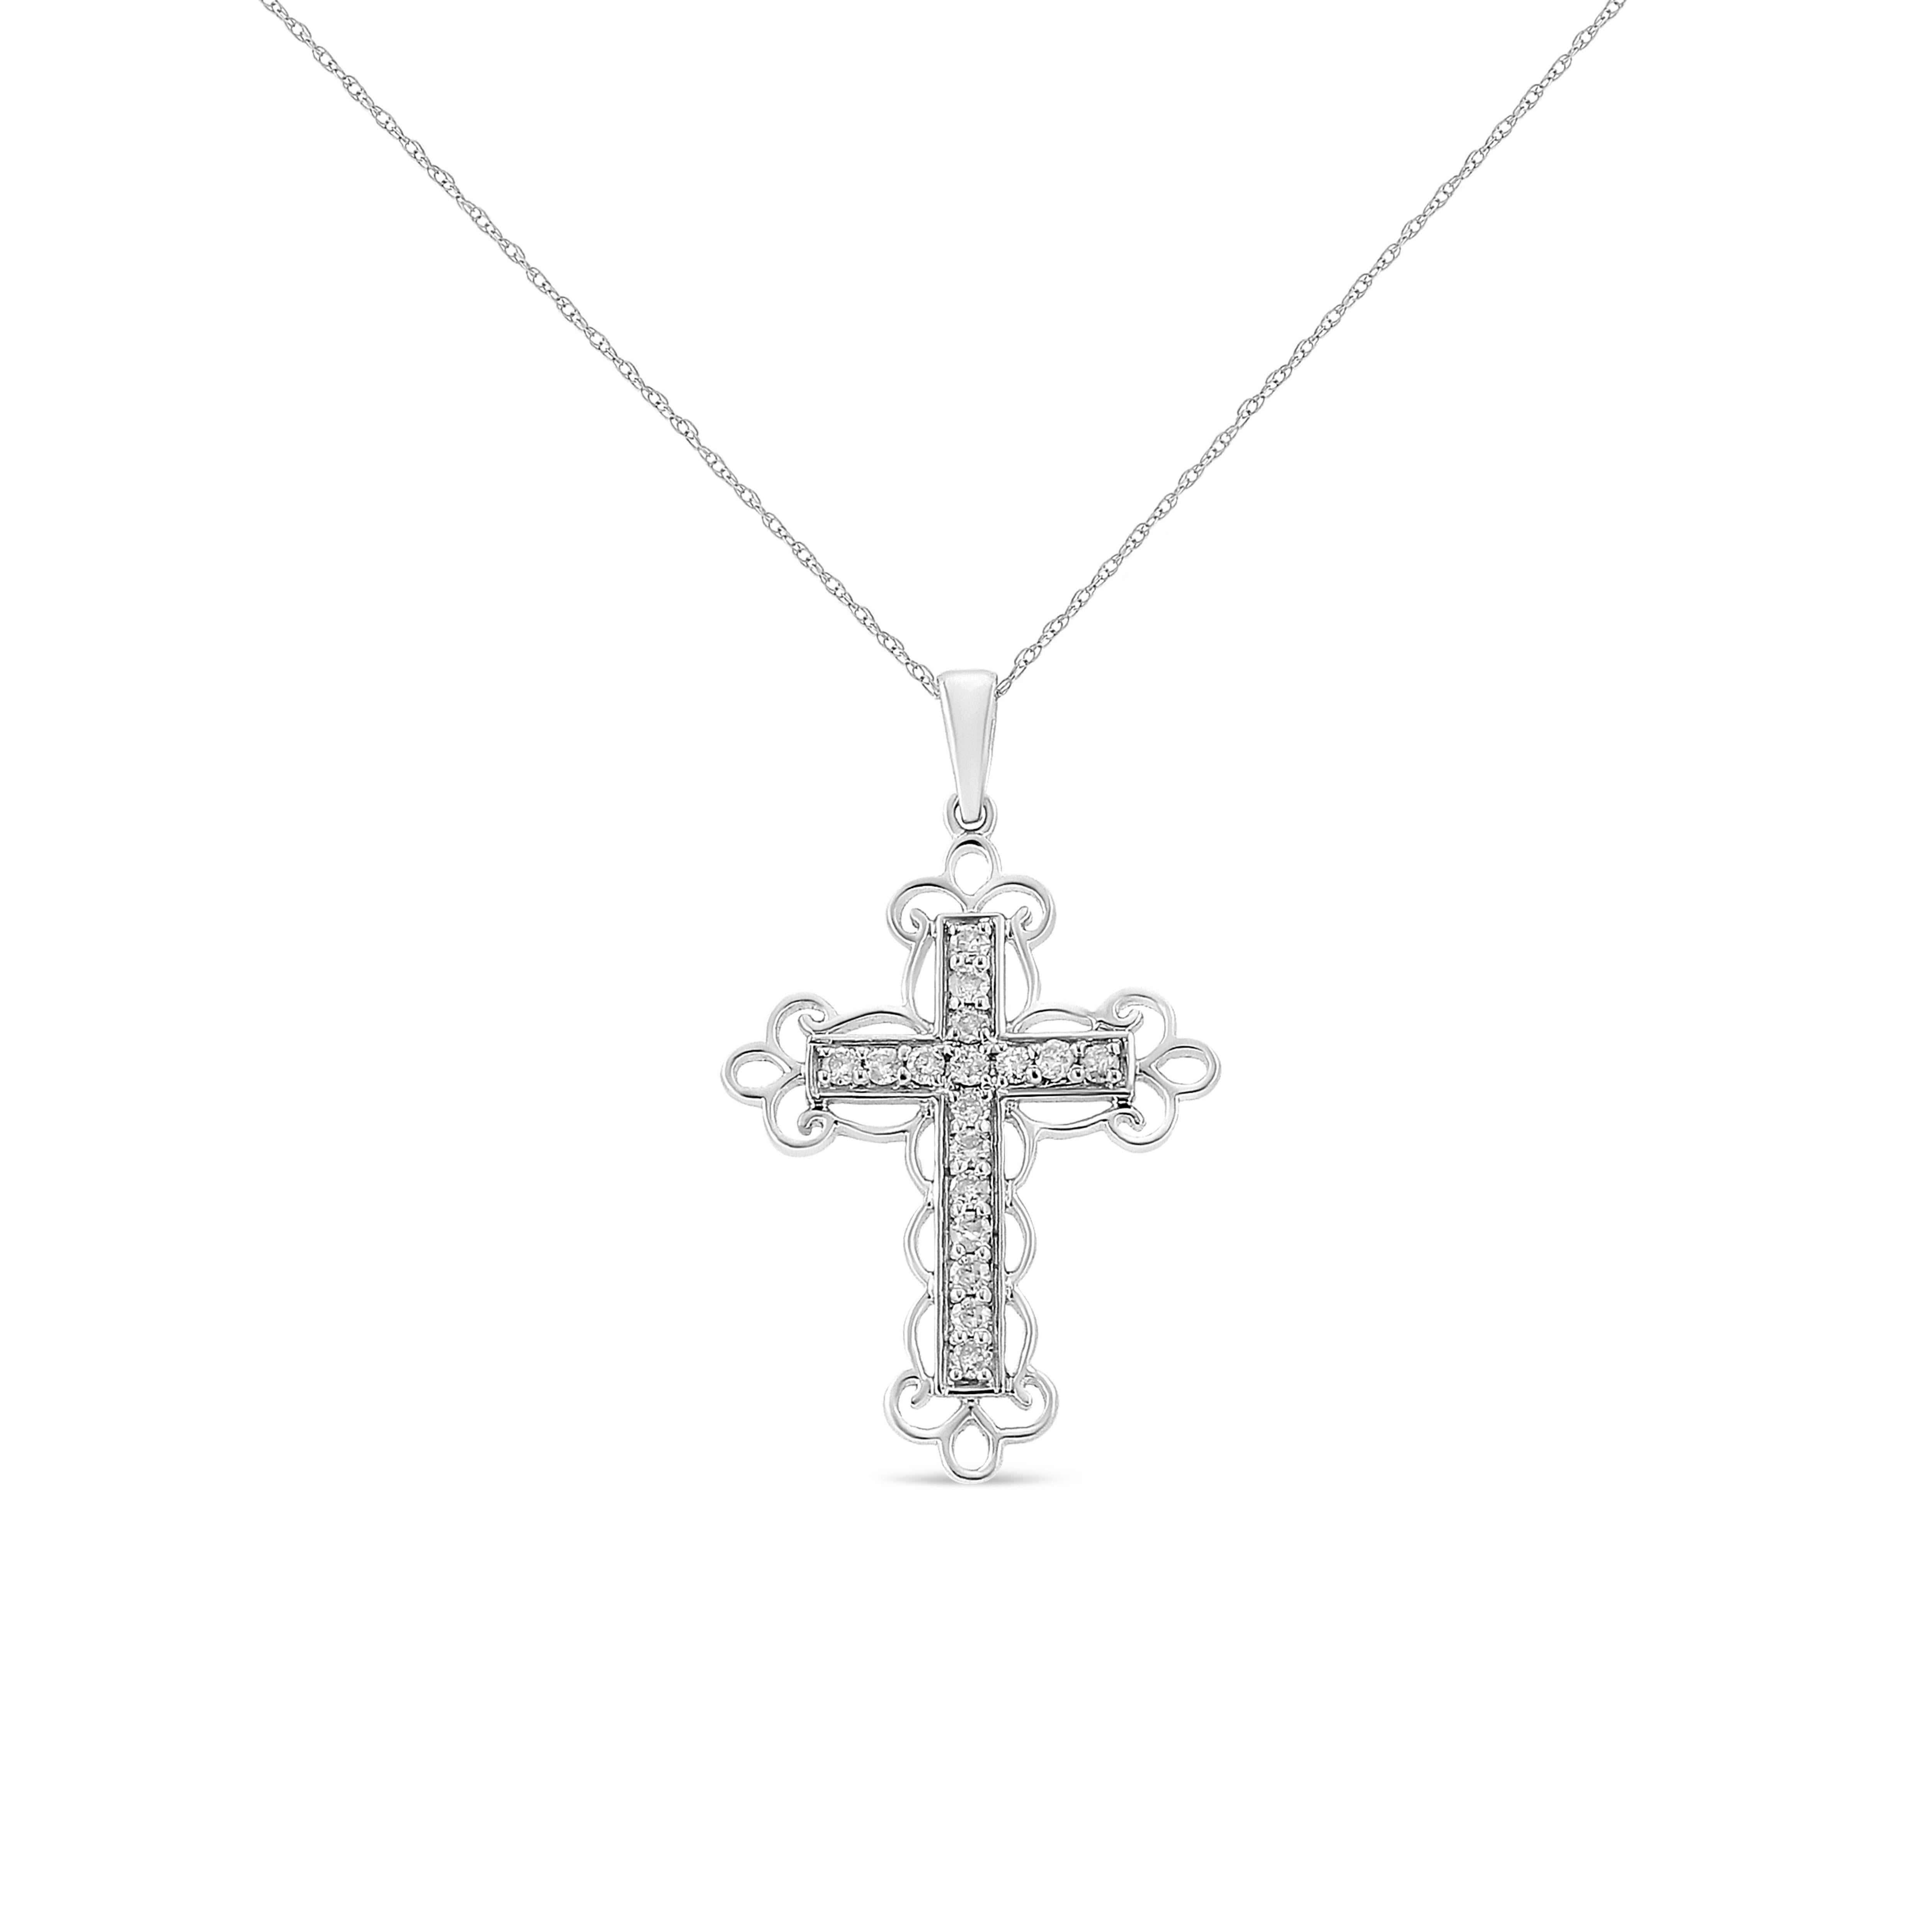 Célébrez votre spiritualité intérieure avec ce magnifique pendentif art-déco en forme de croix en diamant. Ce collier est orné de 1/4 cttw de diamants naturels de taille ronde. Des spirales d'argent s'enroulent autour de la croix pour créer un motif